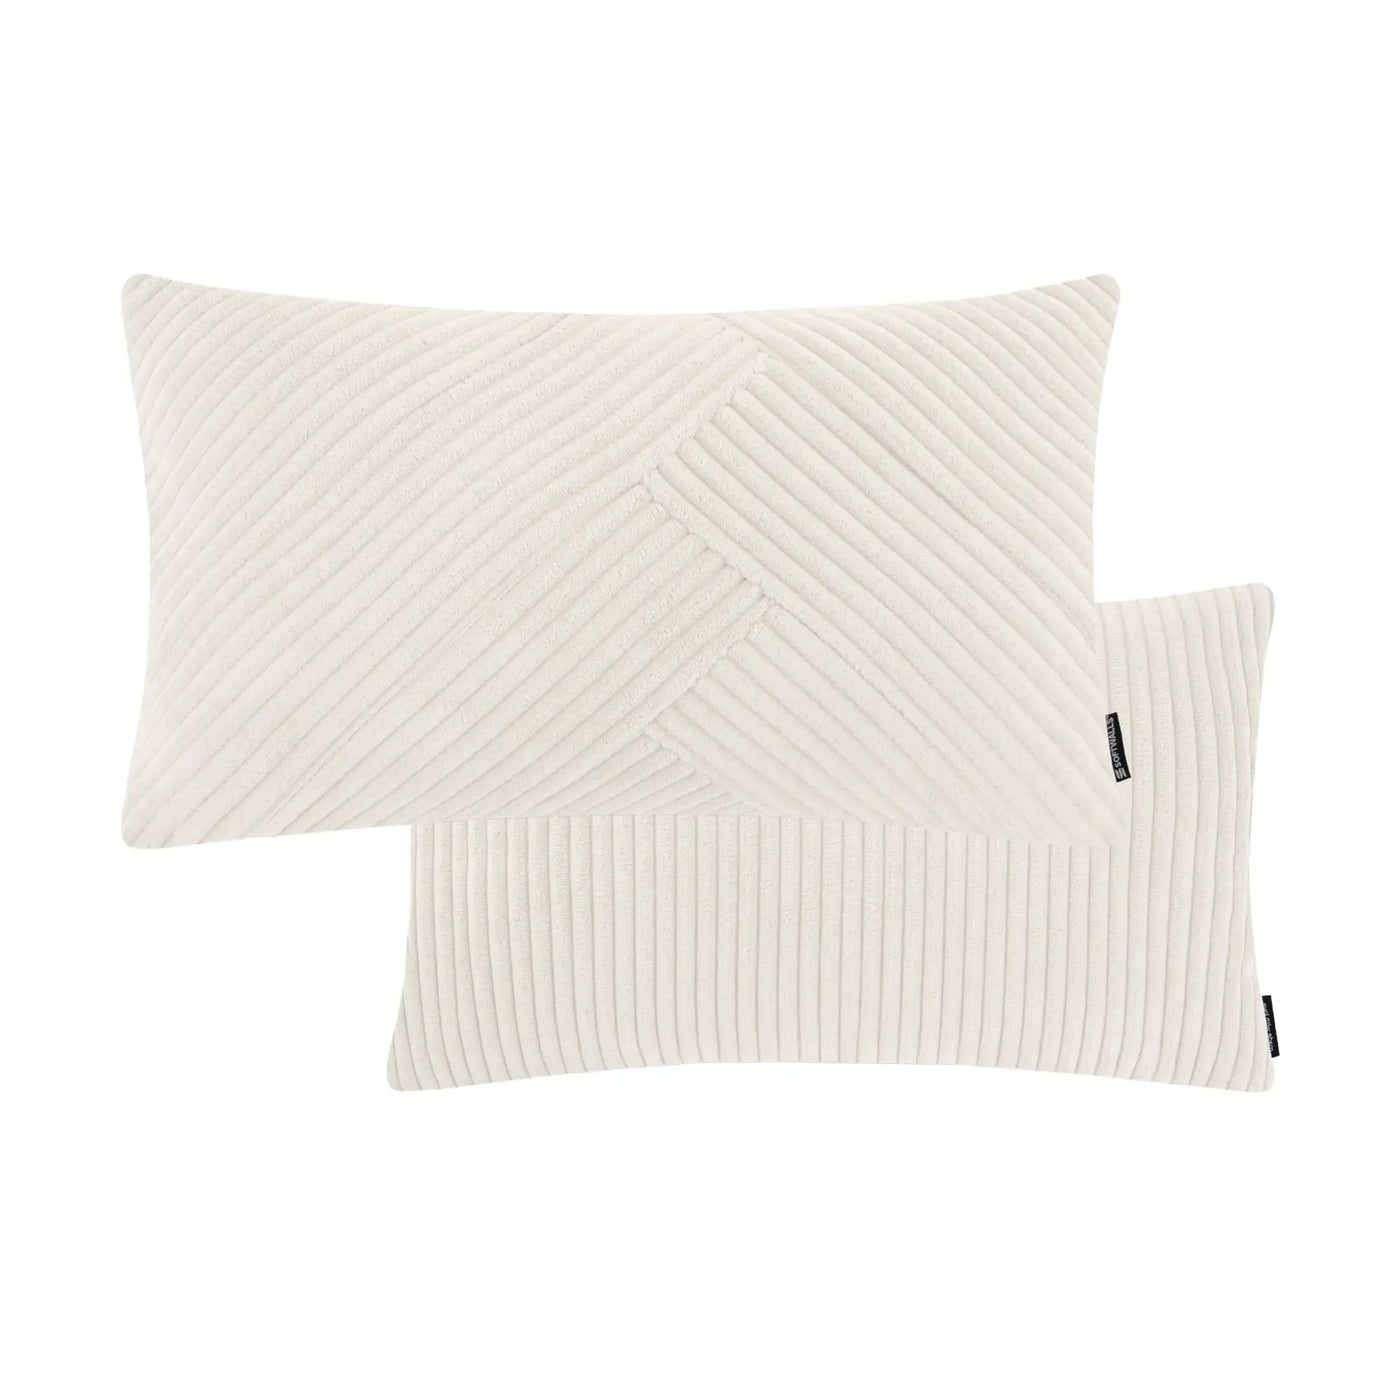 Kissenhülle Wendekissen Cord in der Größe 50 x 30 cm und der Farbe Weiß Creme.